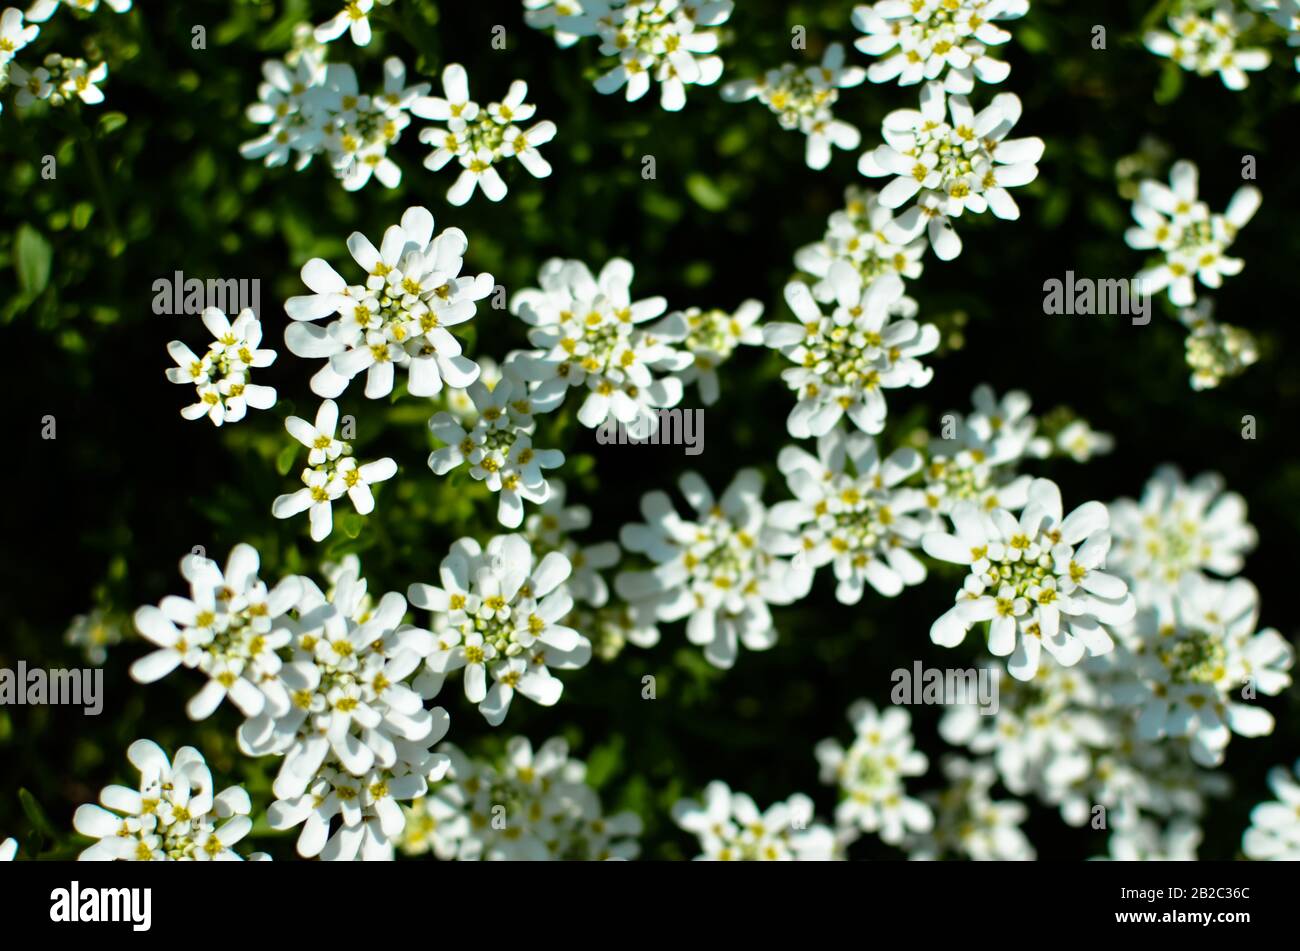 Iberis saxatilis, amara or bitter candytuft many white flowers Stock Photo